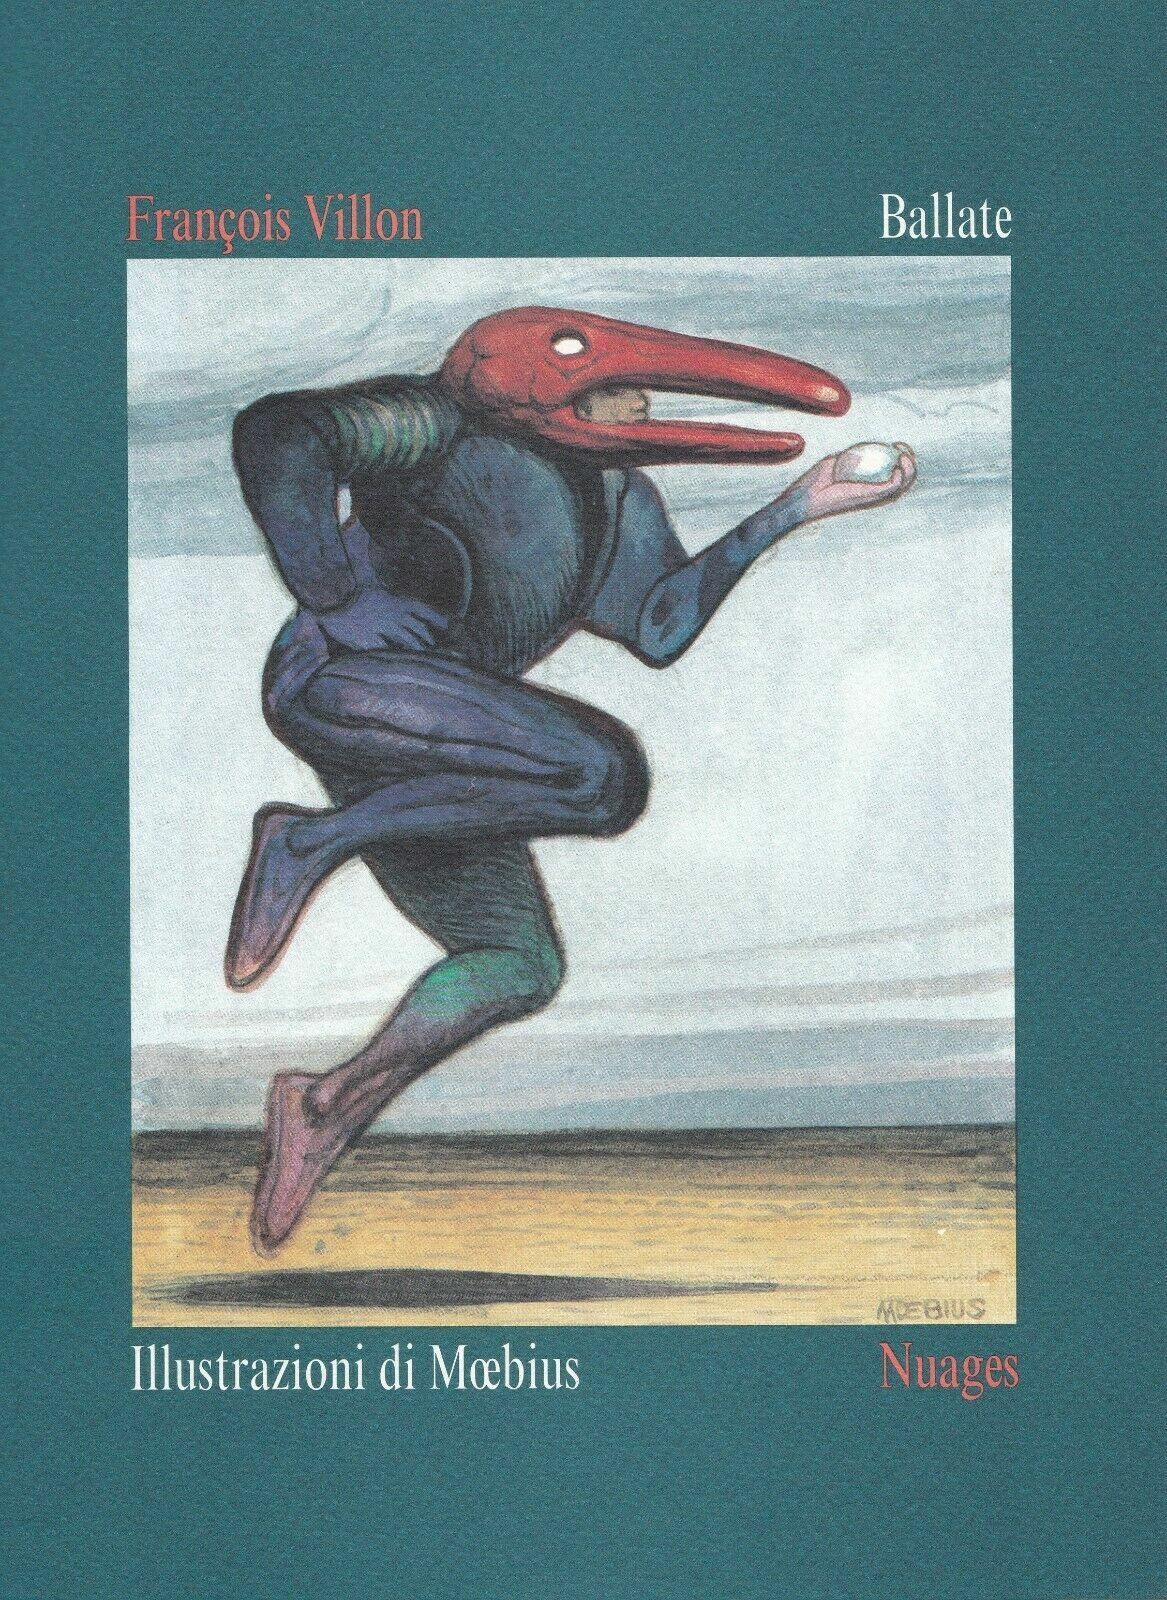 Ballate di Fran?ois Villon, Moebius, Roberto Mussapi, Ferruccio Giromini,  1995,